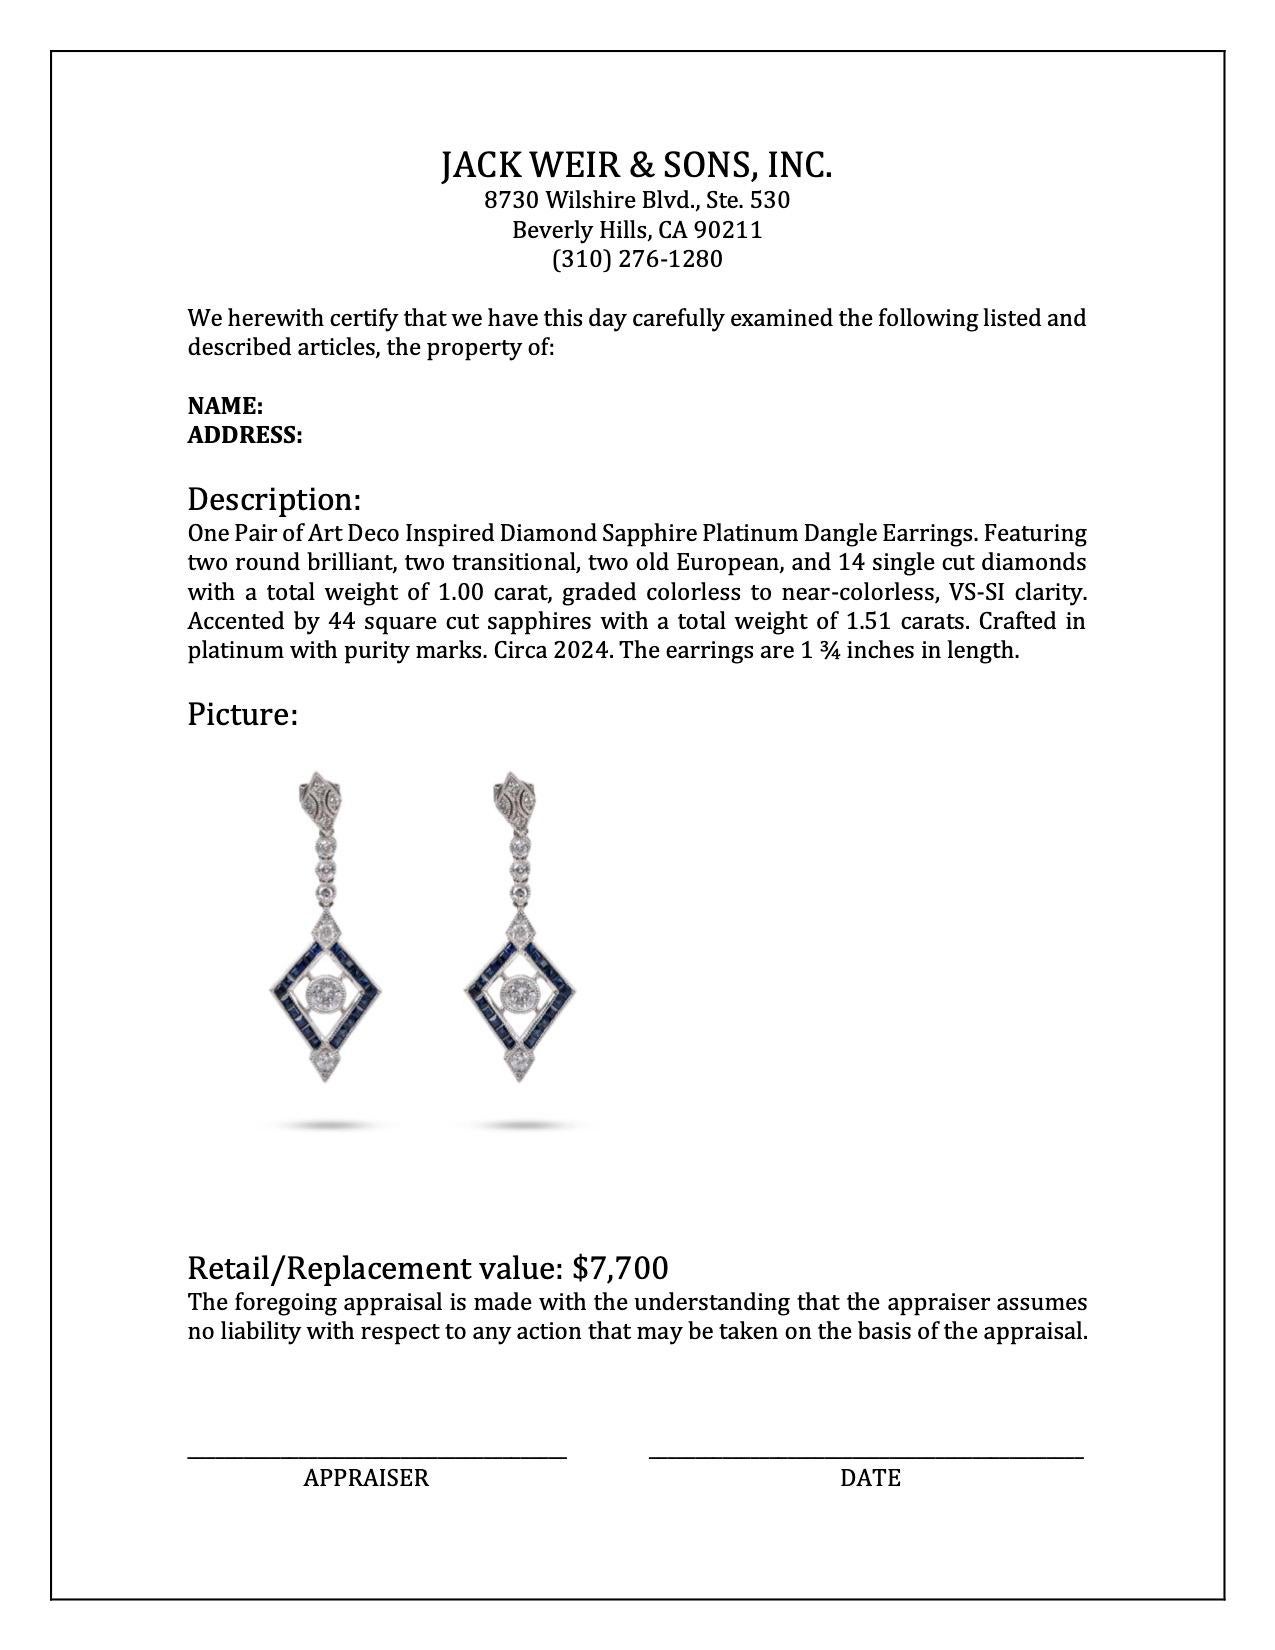 Women's or Men's Art Deco Inspired Diamond Sapphire Platinum Dangle Earrings For Sale